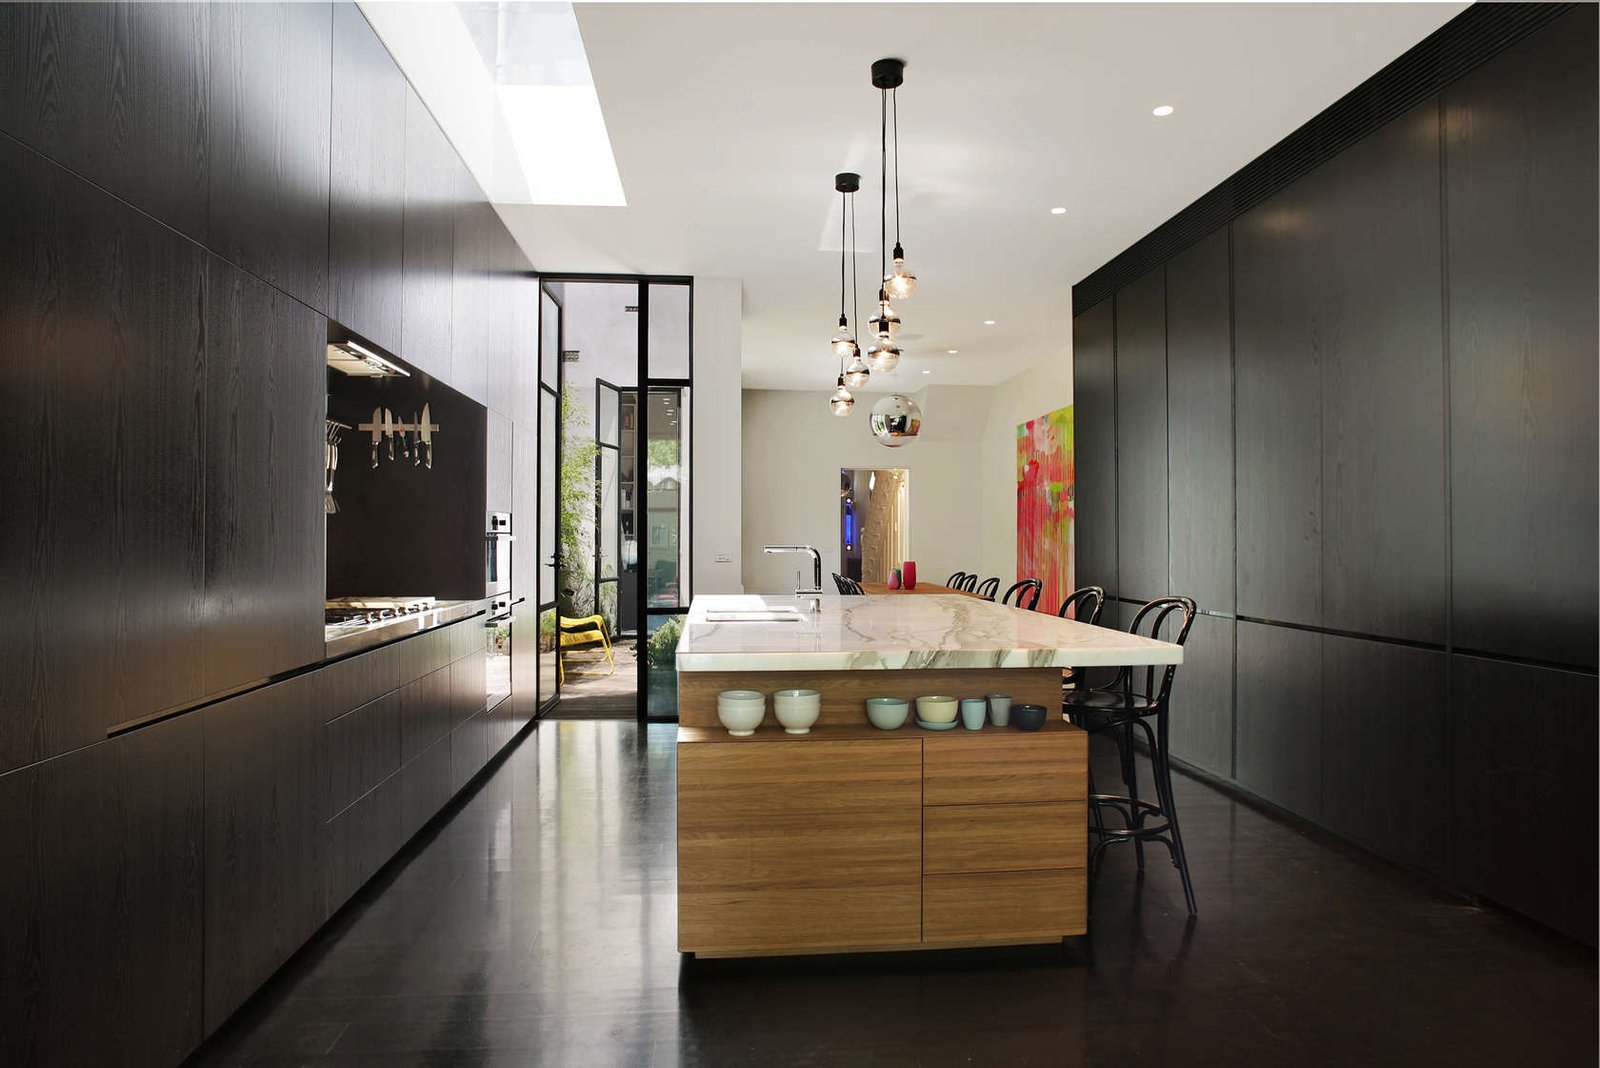 Ambiente moderno con mobili massicci di colore nero, pavimenti in cemento effetto lucido, isola in noce con piano in marmo - design cucine moderne